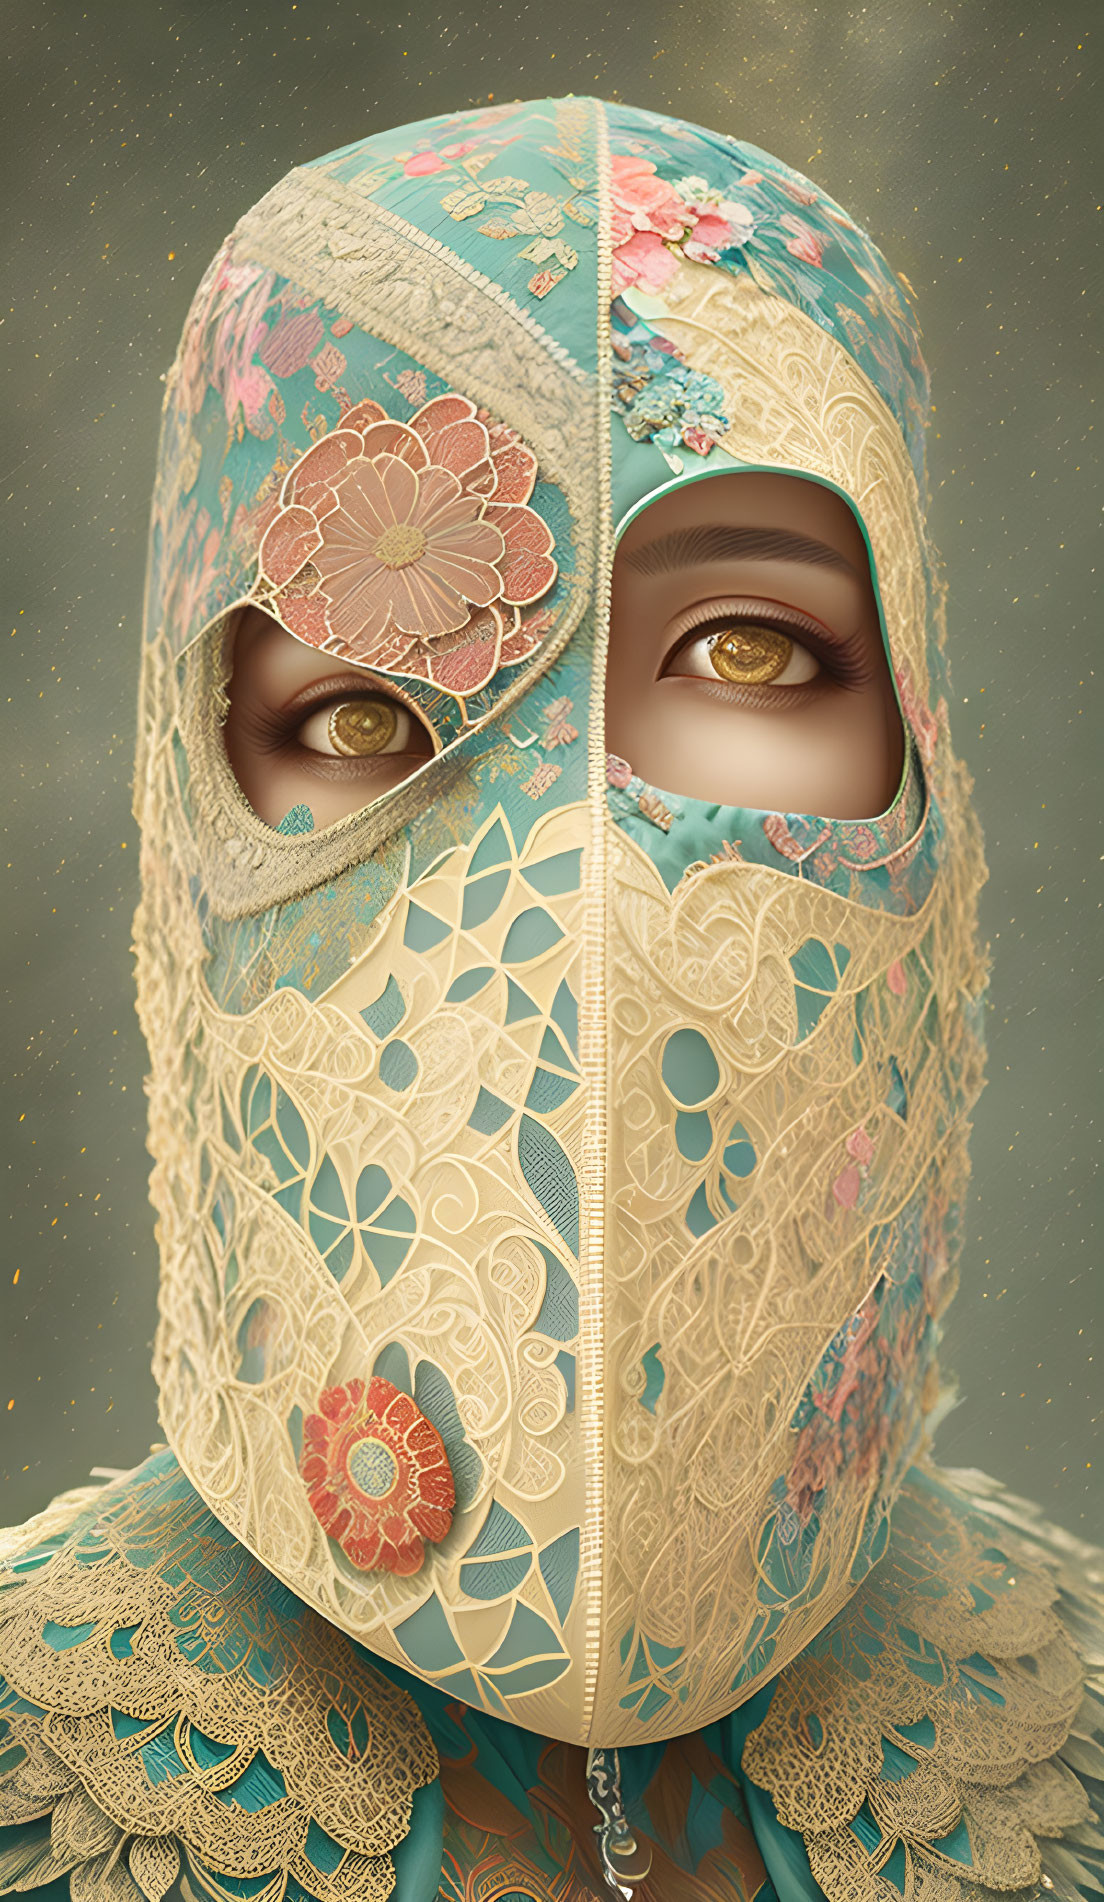 Digital Artwork: Person in Ornate Floral Mask on Beige Background